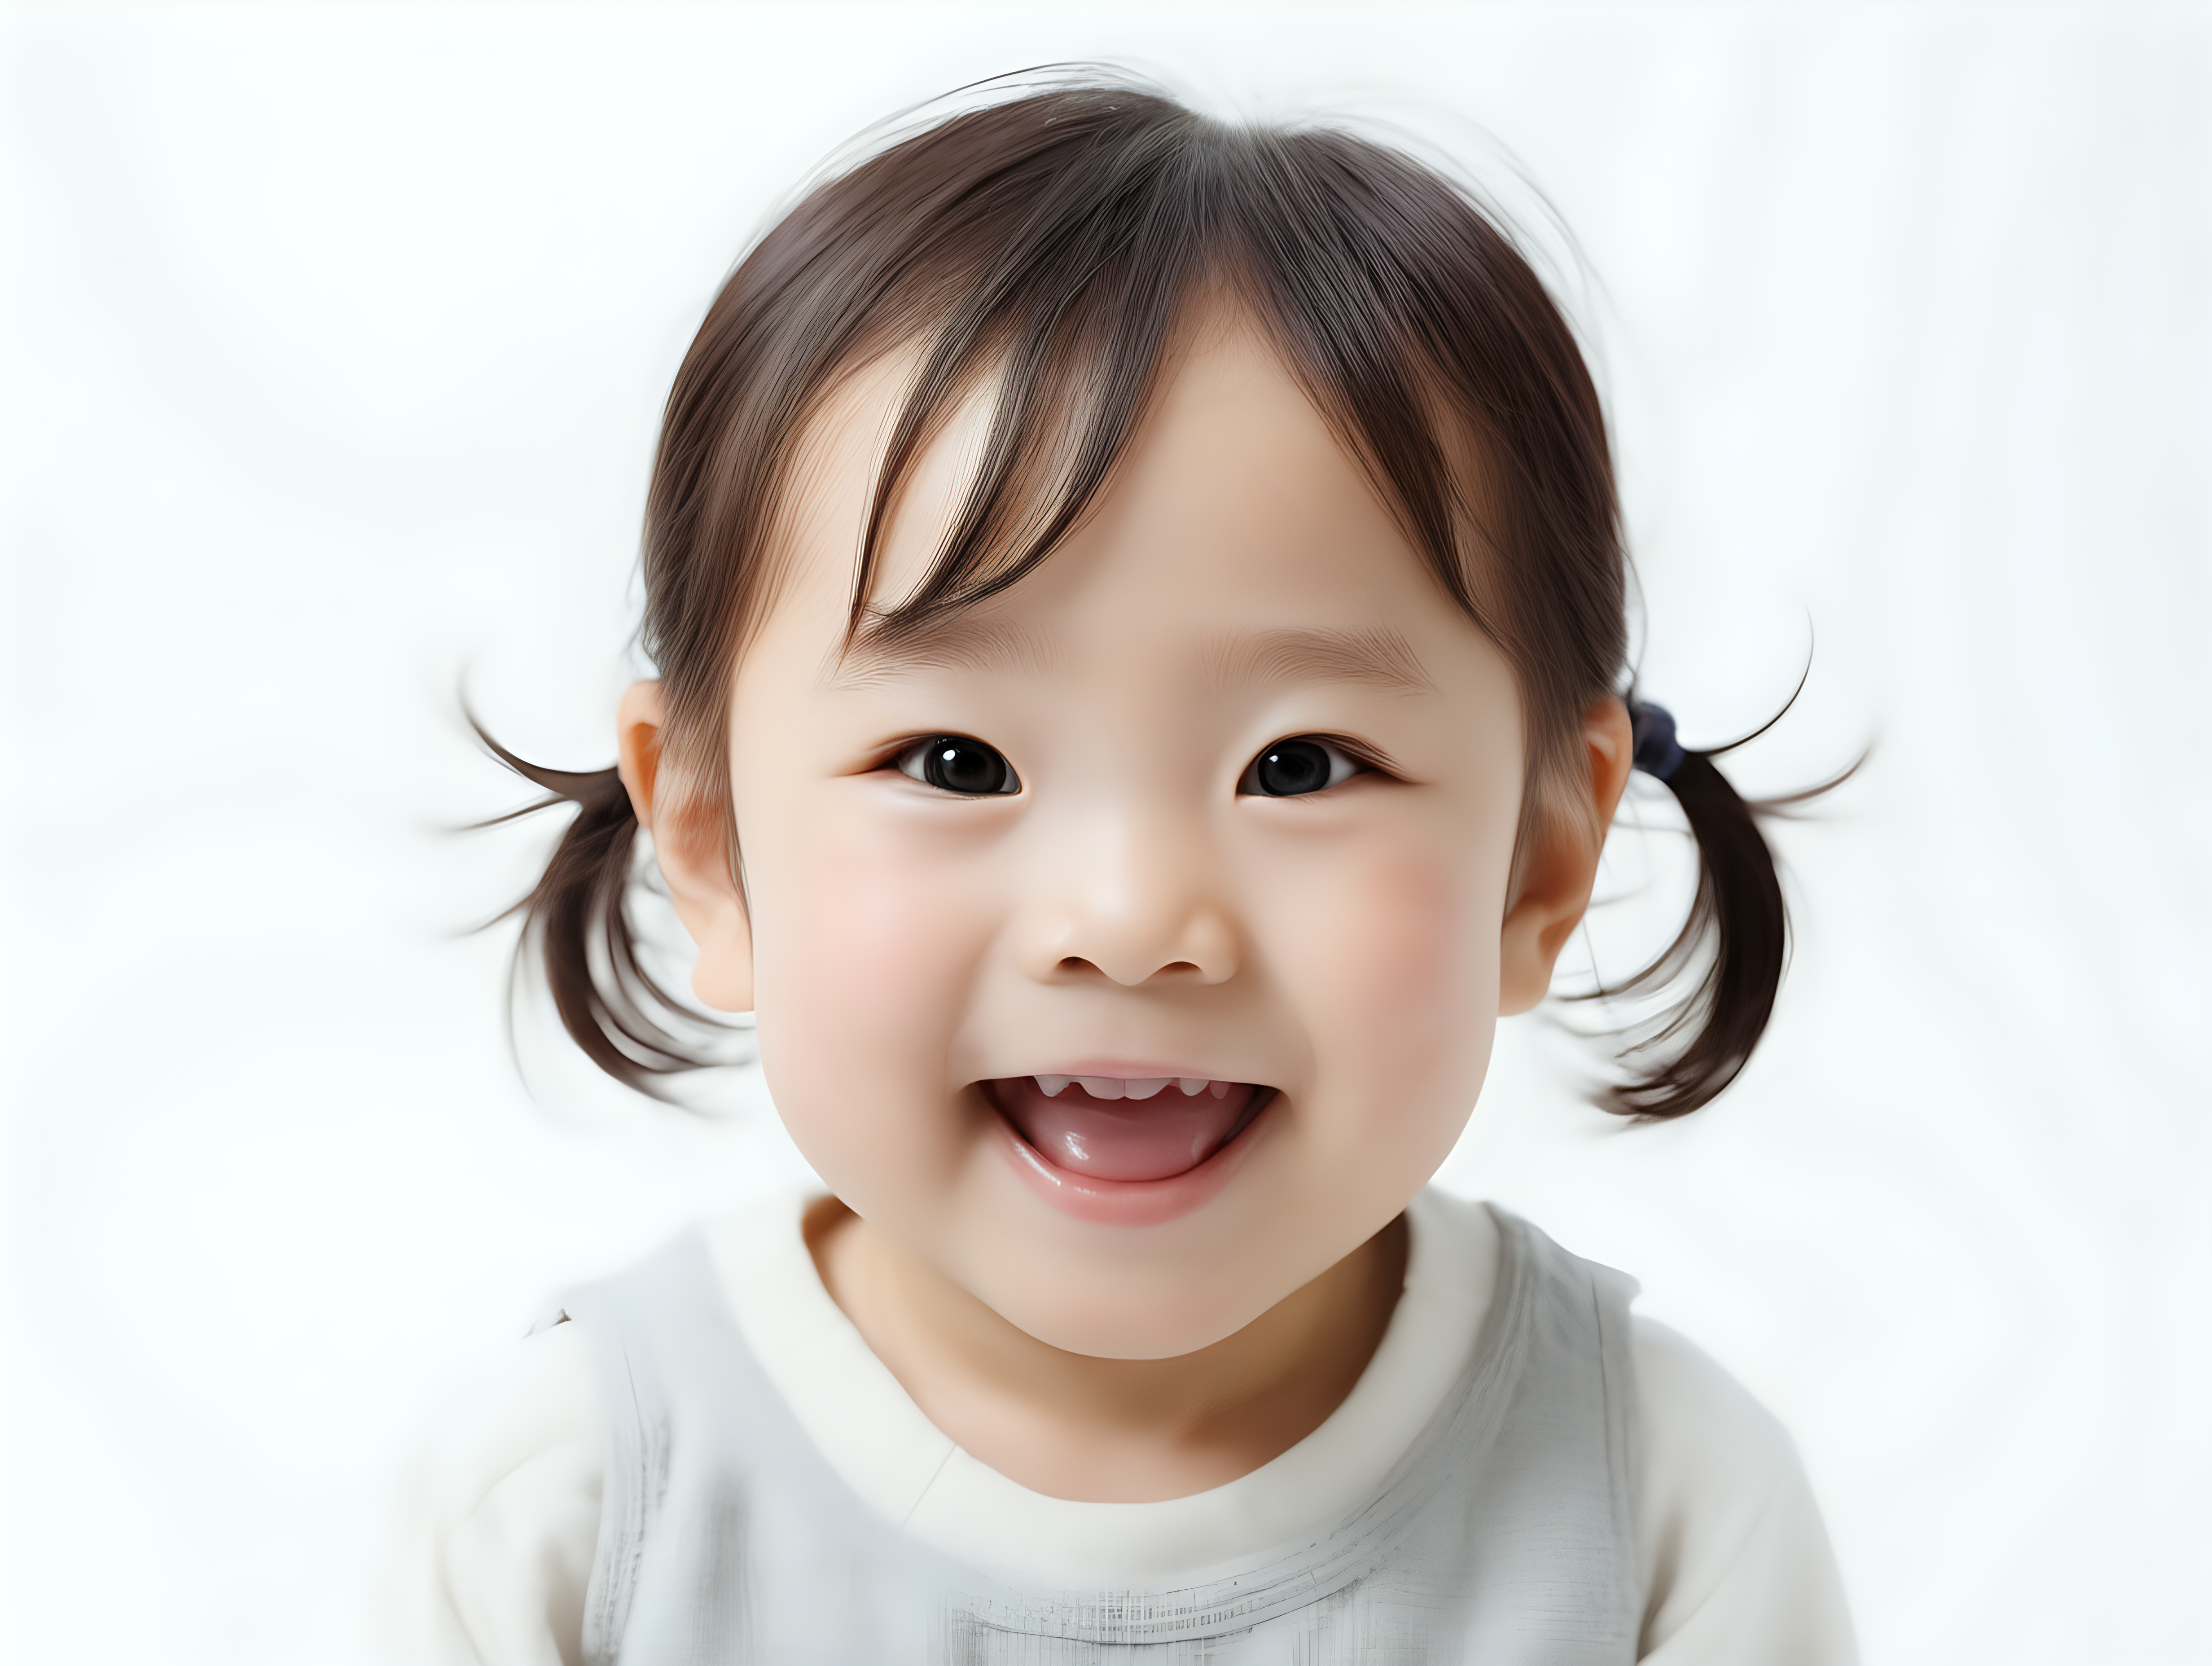 bílé pozadí_reálná tvář_dítě 3 roky_ japonka_usmívají se

